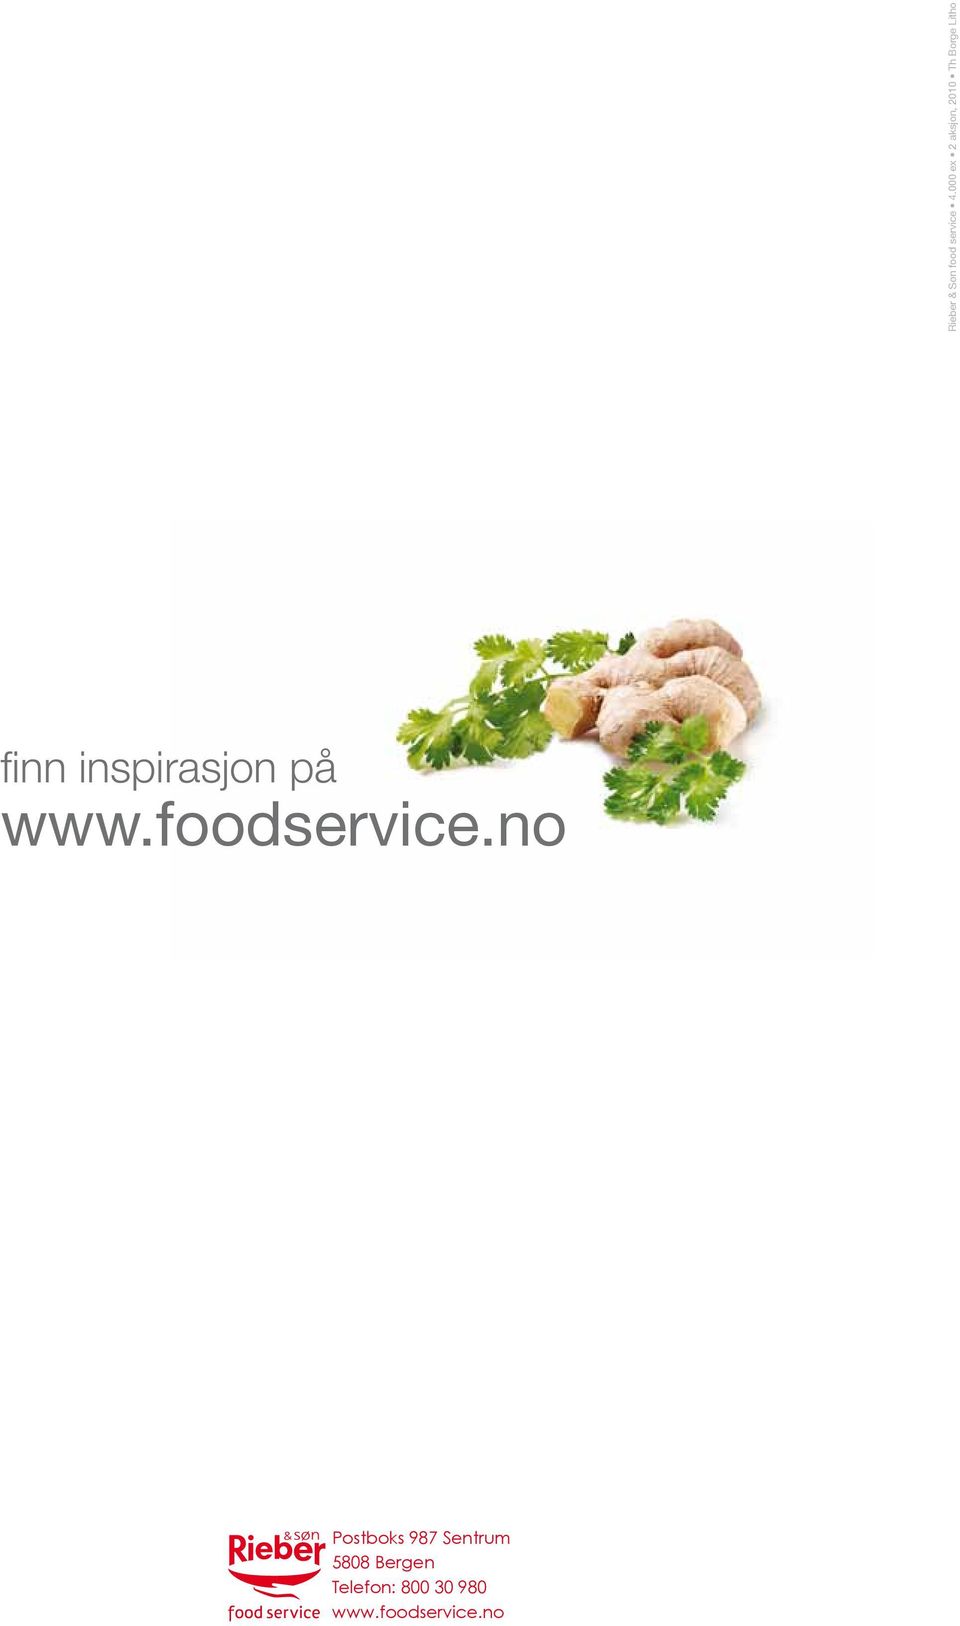 nsprasjon på www.foodservce.